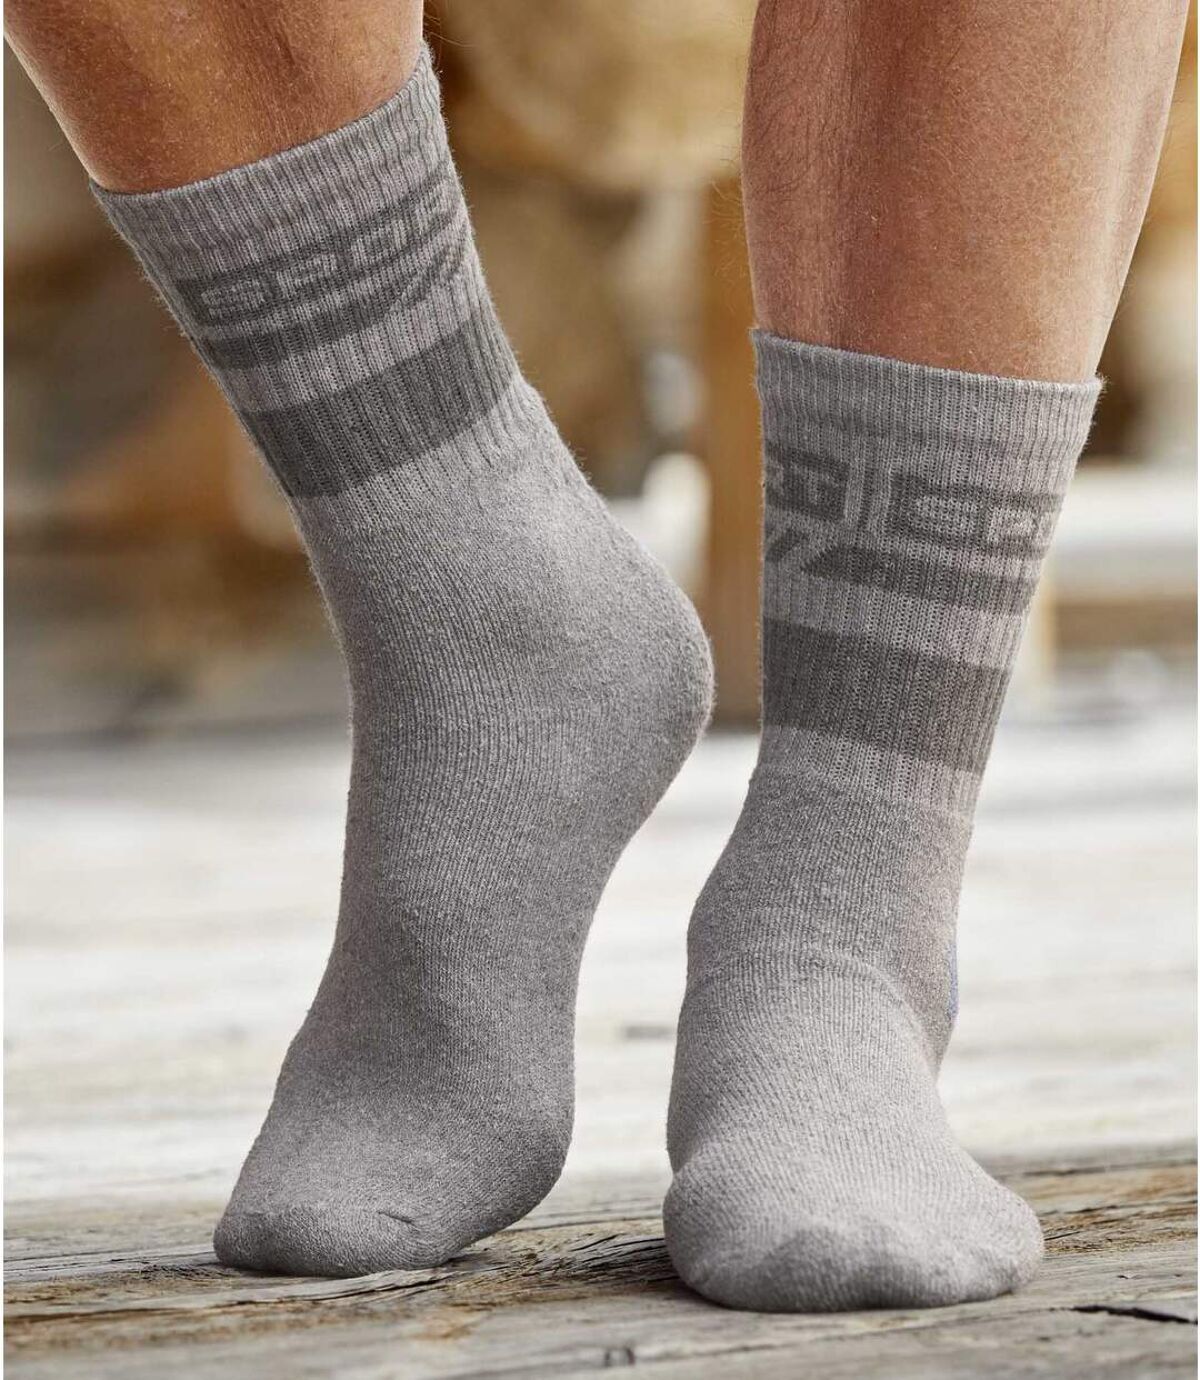 Pack of 4 Pairs of Men's Sports Socks - Burgundy Gray Indigo Atlas For Men